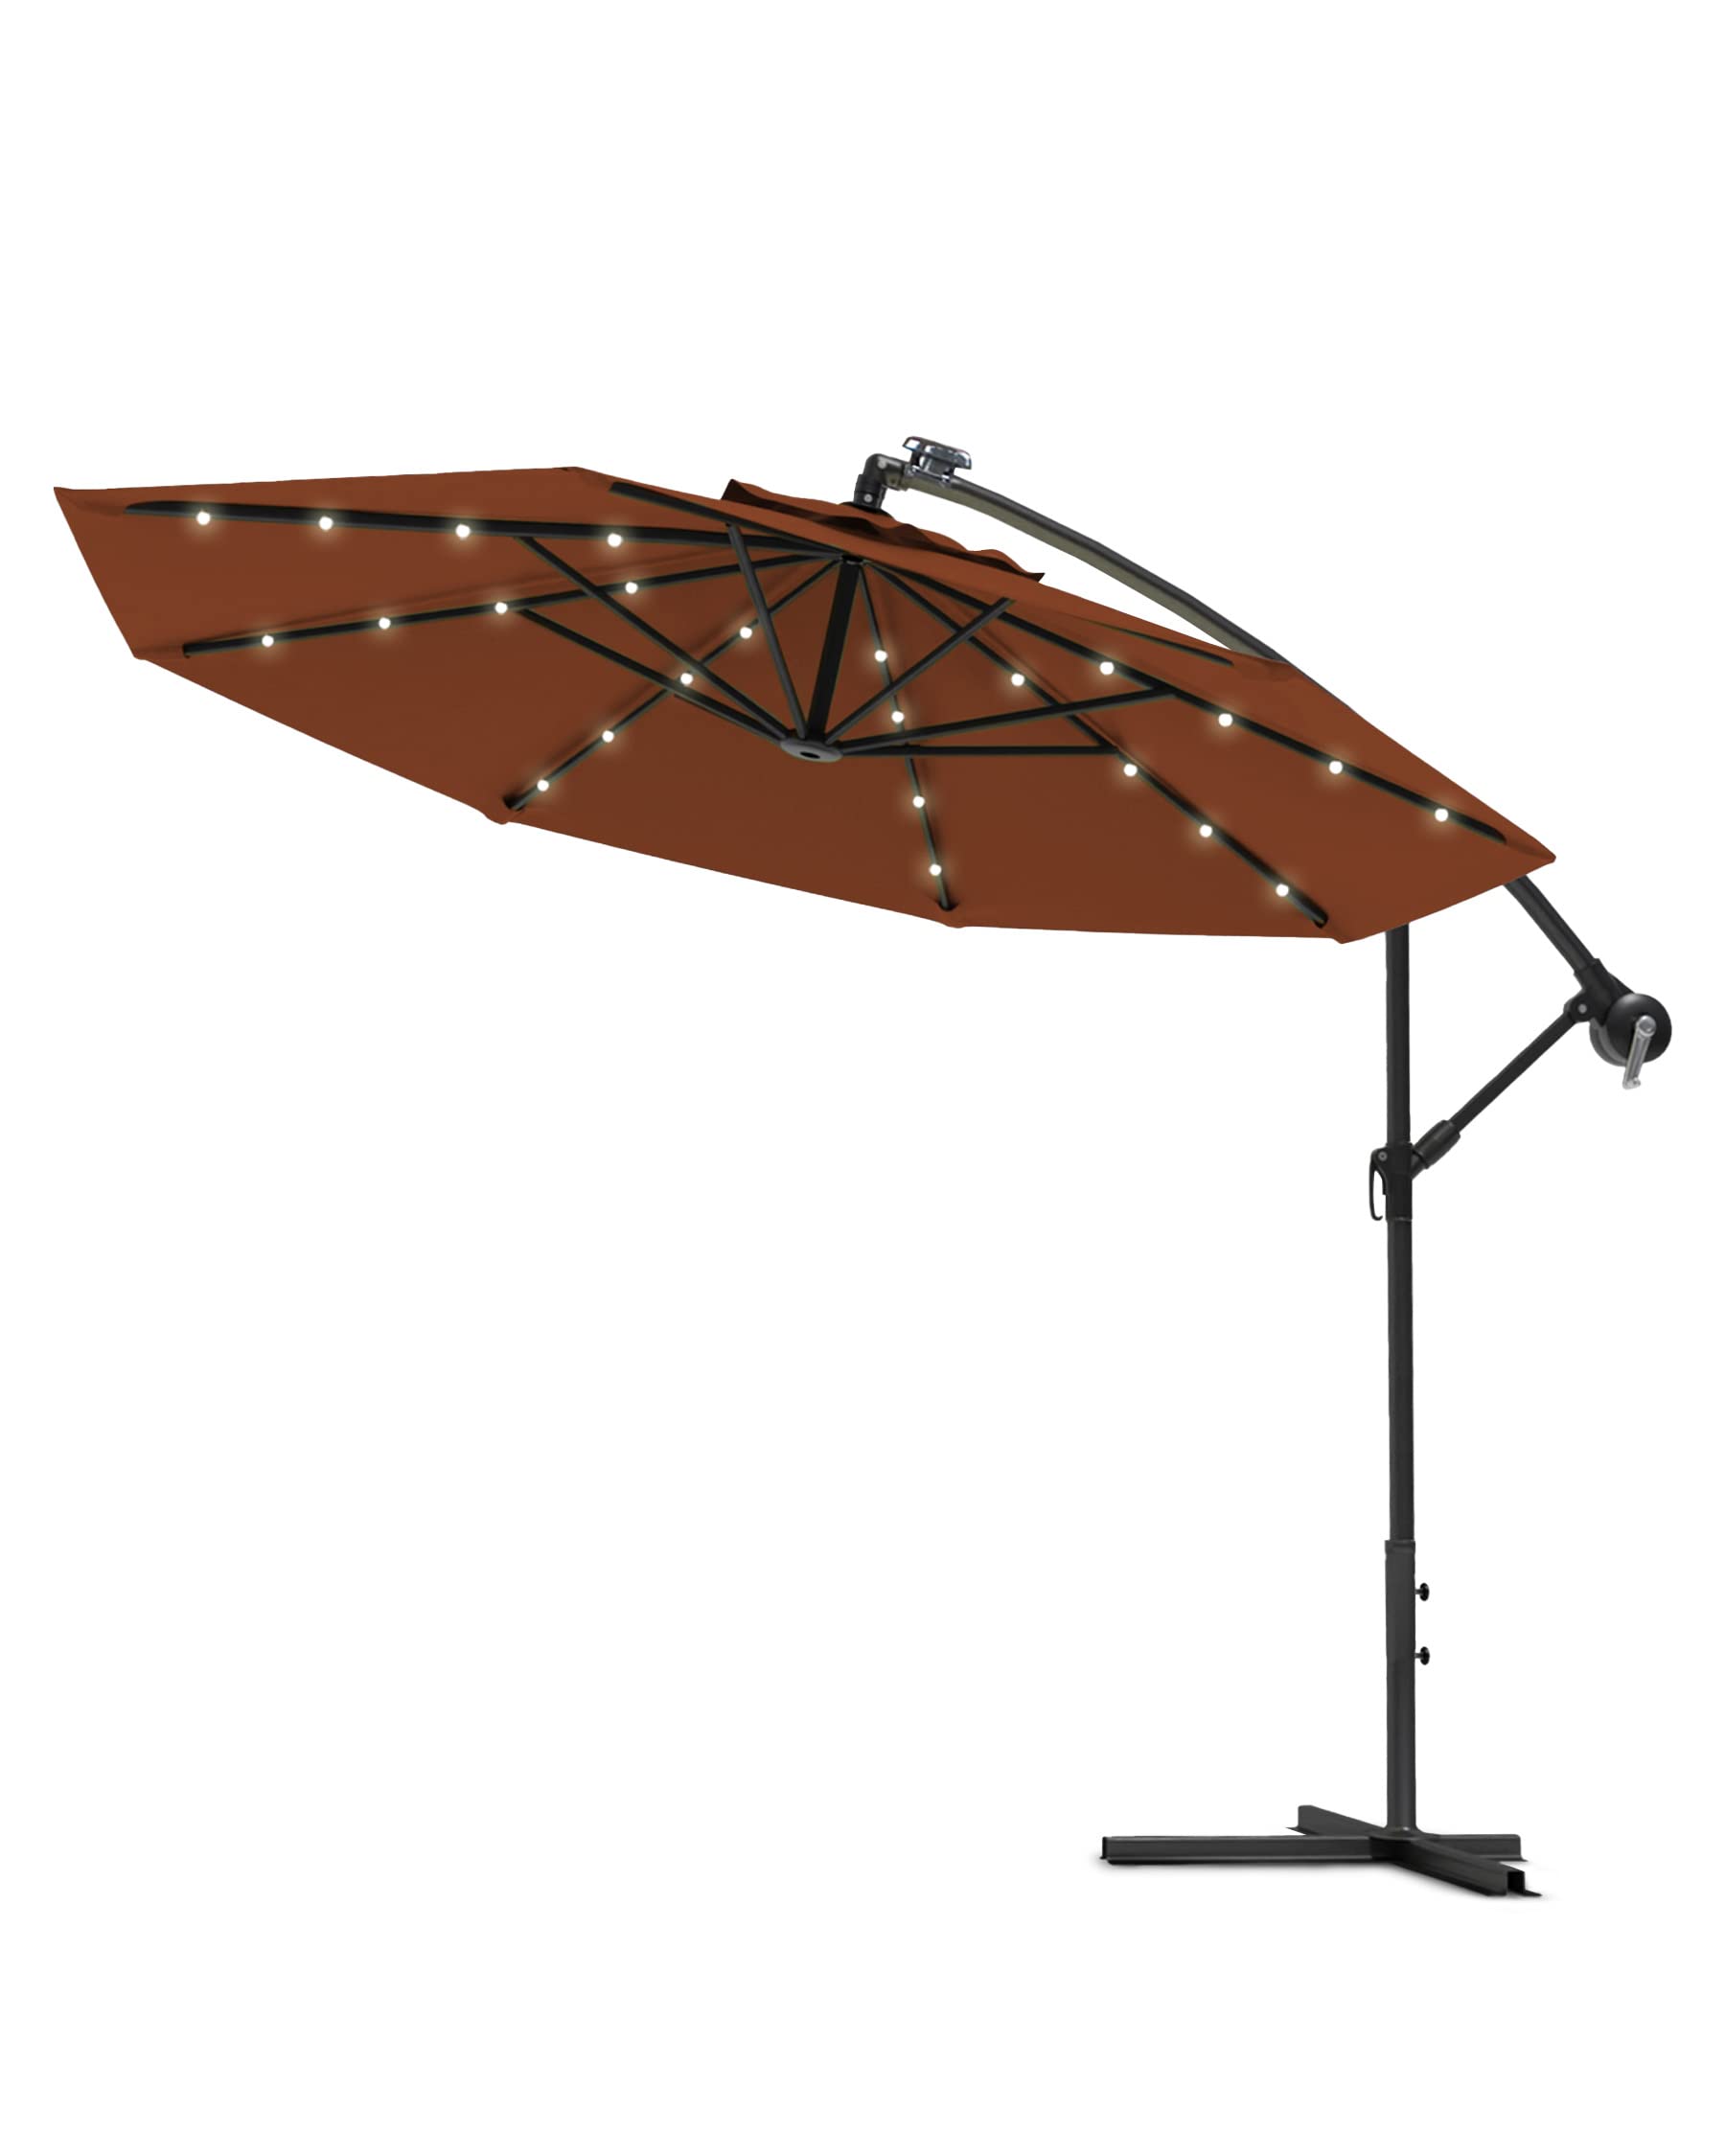 Swing & Harmonie Sonnenschirm - Luxus Ampelschirm - Gartenschirm mit LED Beleuchtung - Hochwertiger Sonnenschutz mit Solarpanel - (Ø 300cm, Braun)